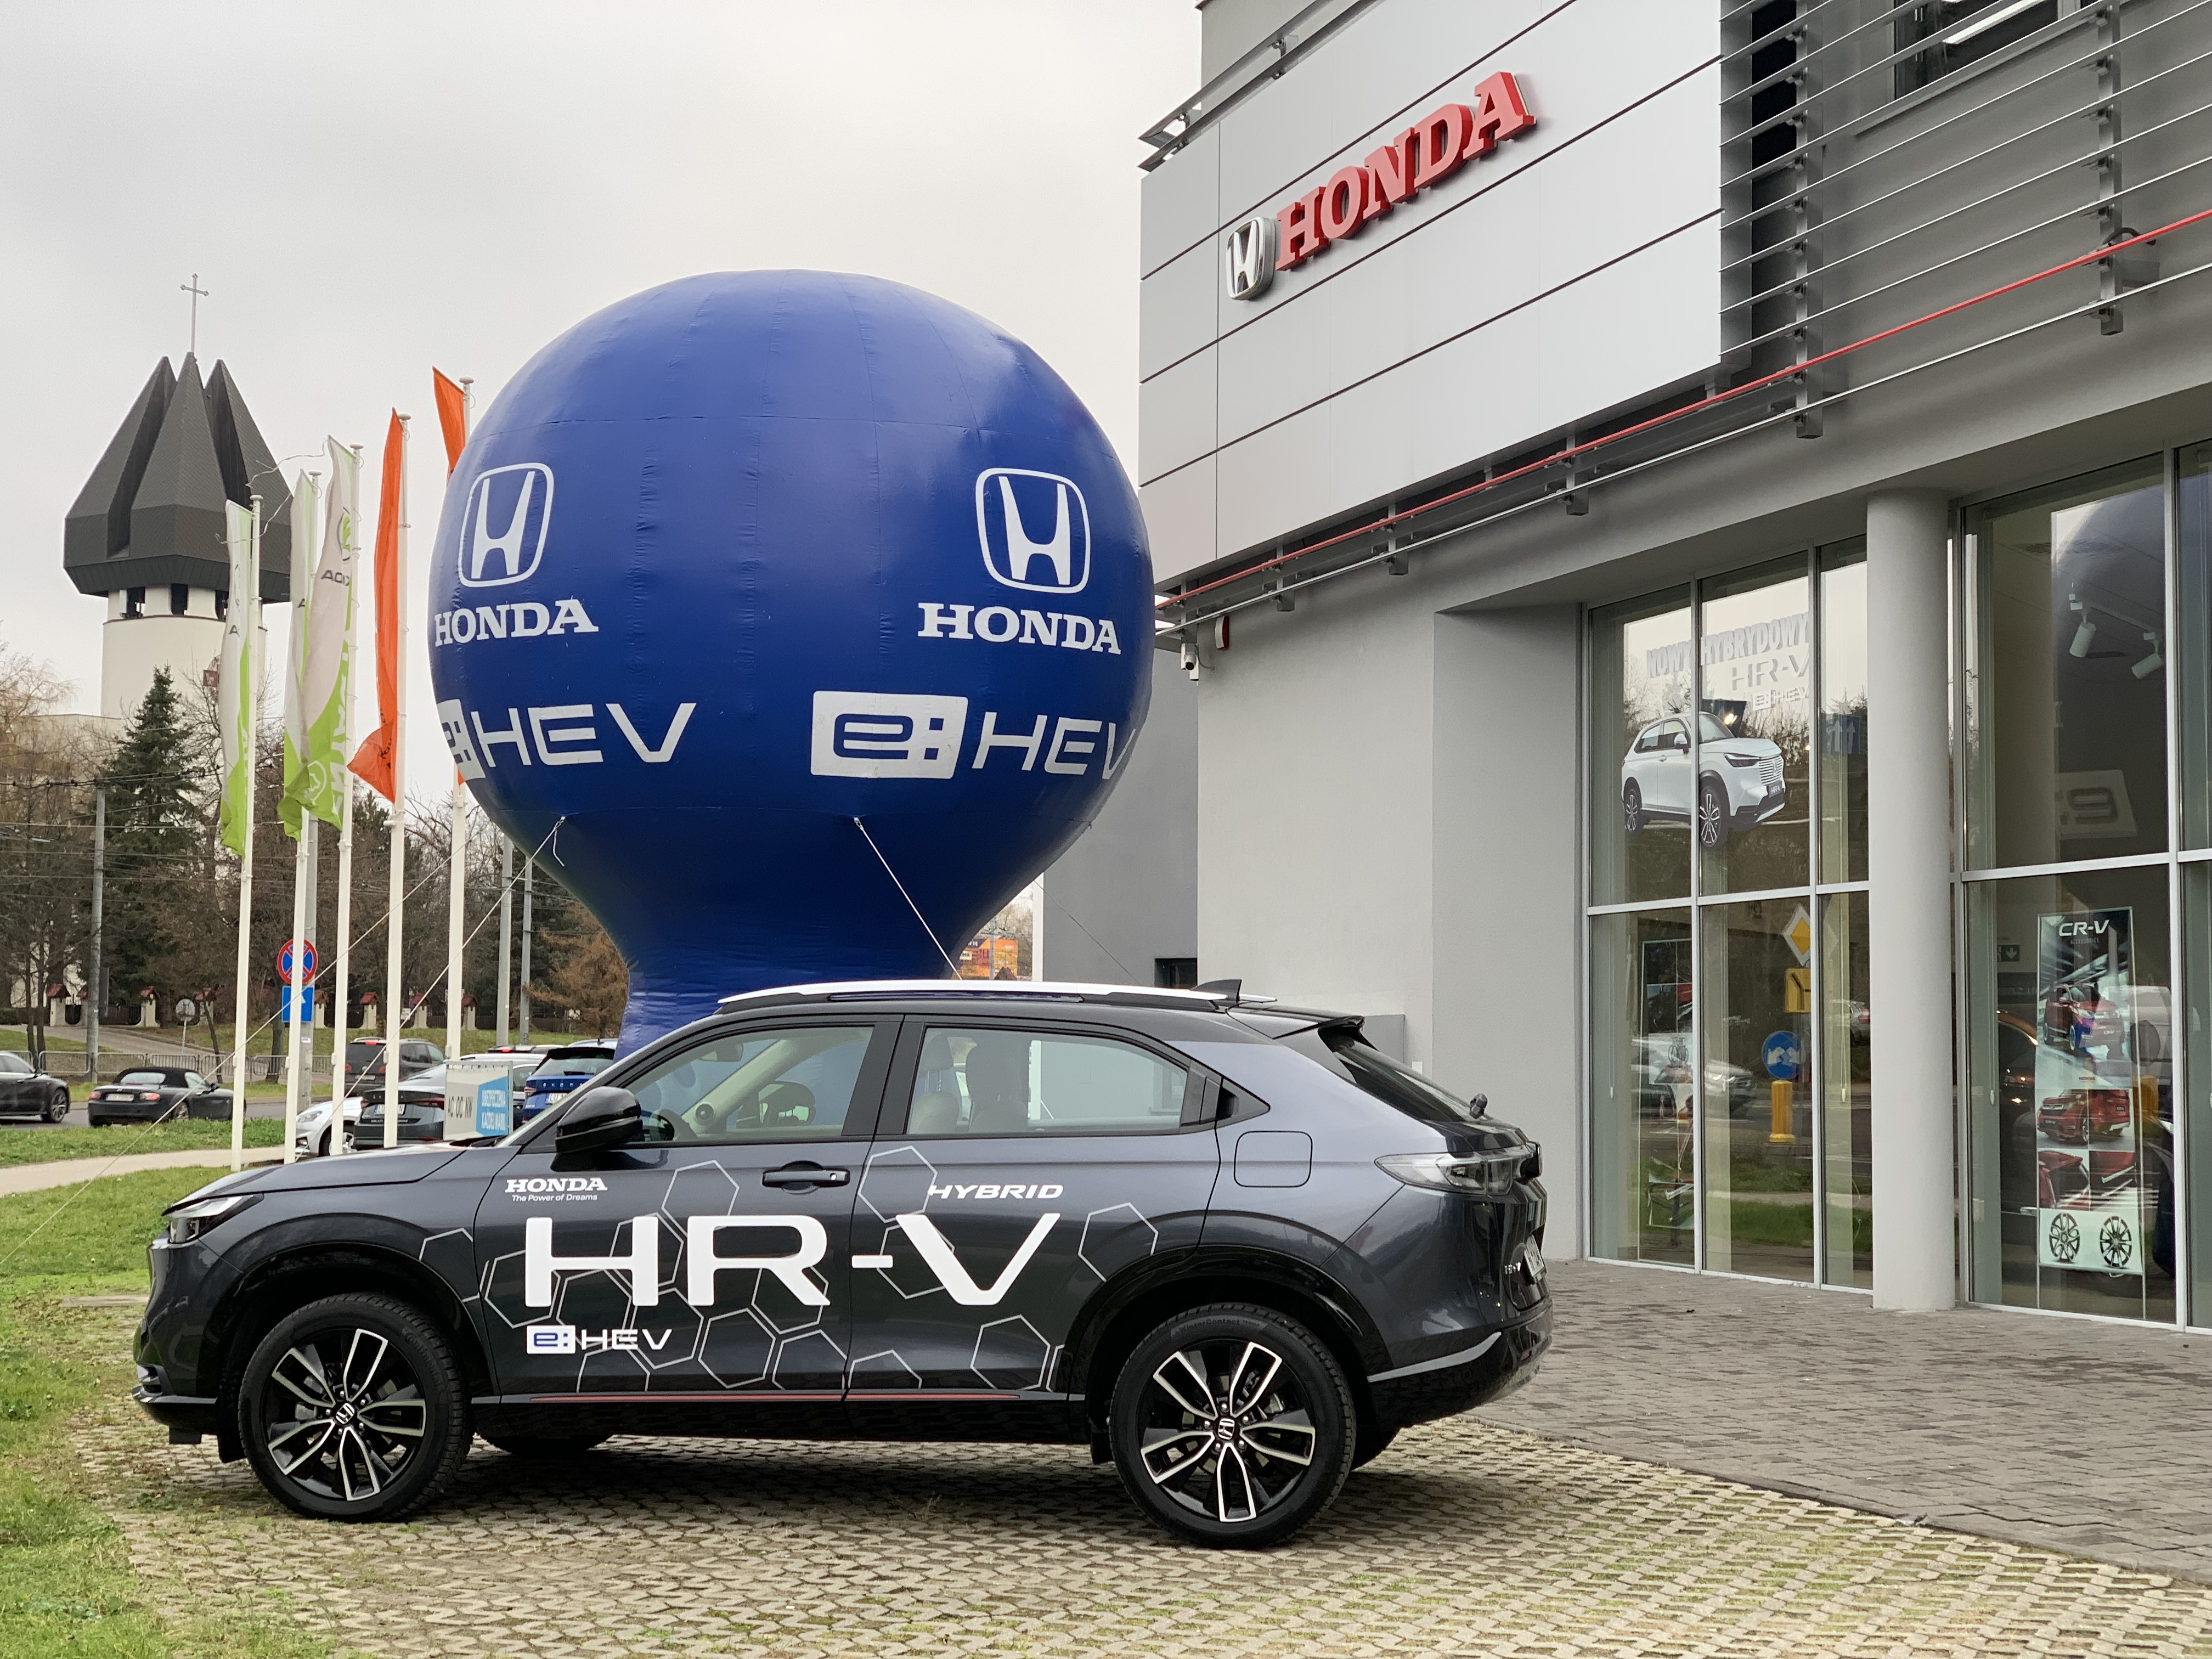 Samoładująca się hybryda Honda HR-V e:HEV. Nowoczesność w zasięgu ręki